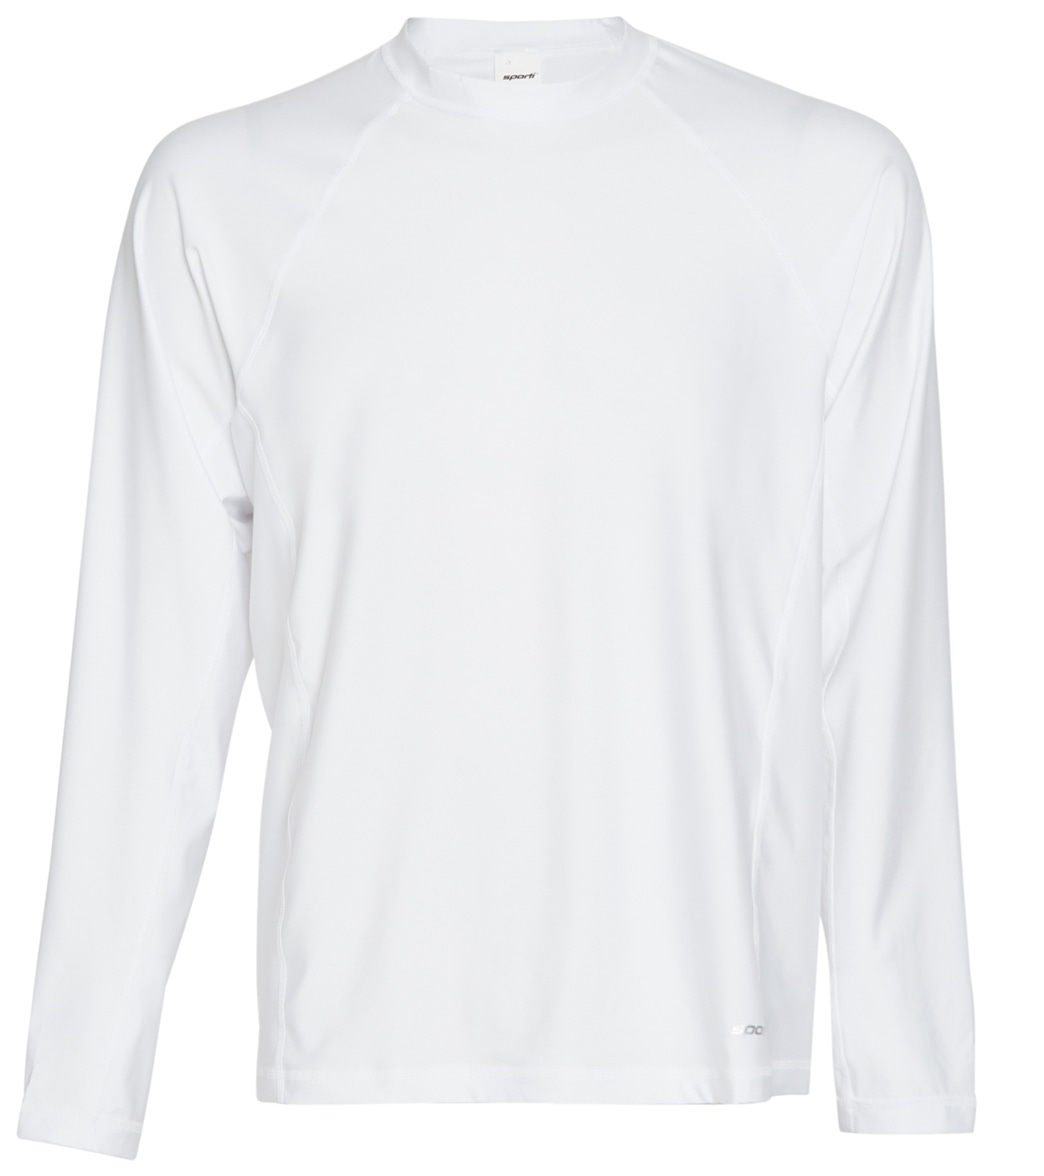 Sporti Men's Long Sleeve Shirt Upf 50+ Comfort Fit Rashguard - White Small - Swimoutlet.com